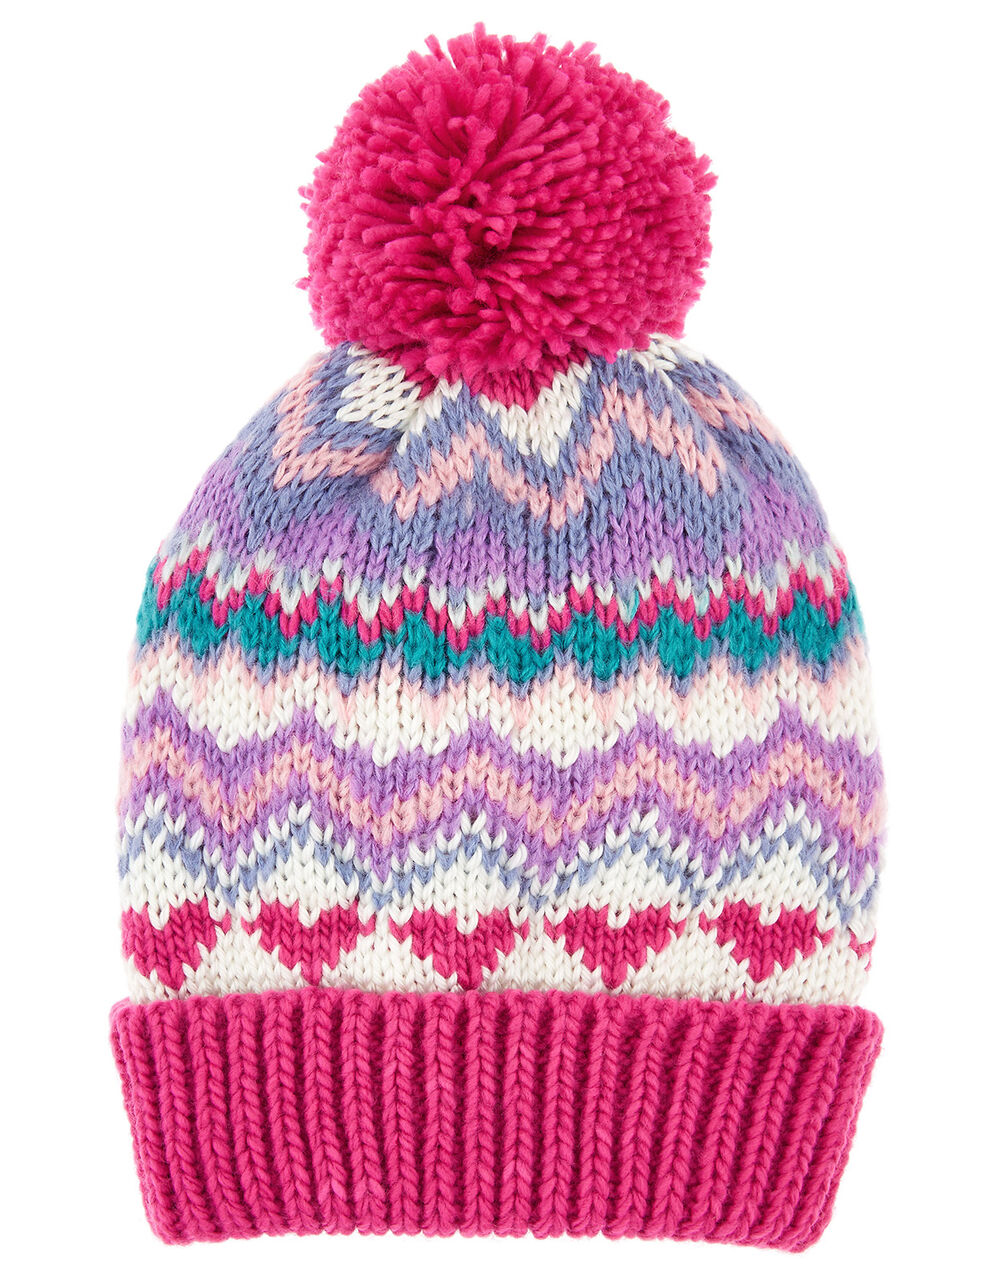 Heart Fairisle Pom-Pom Beanie Hat Multi | Girls Hats, Gloves & Scarves ...